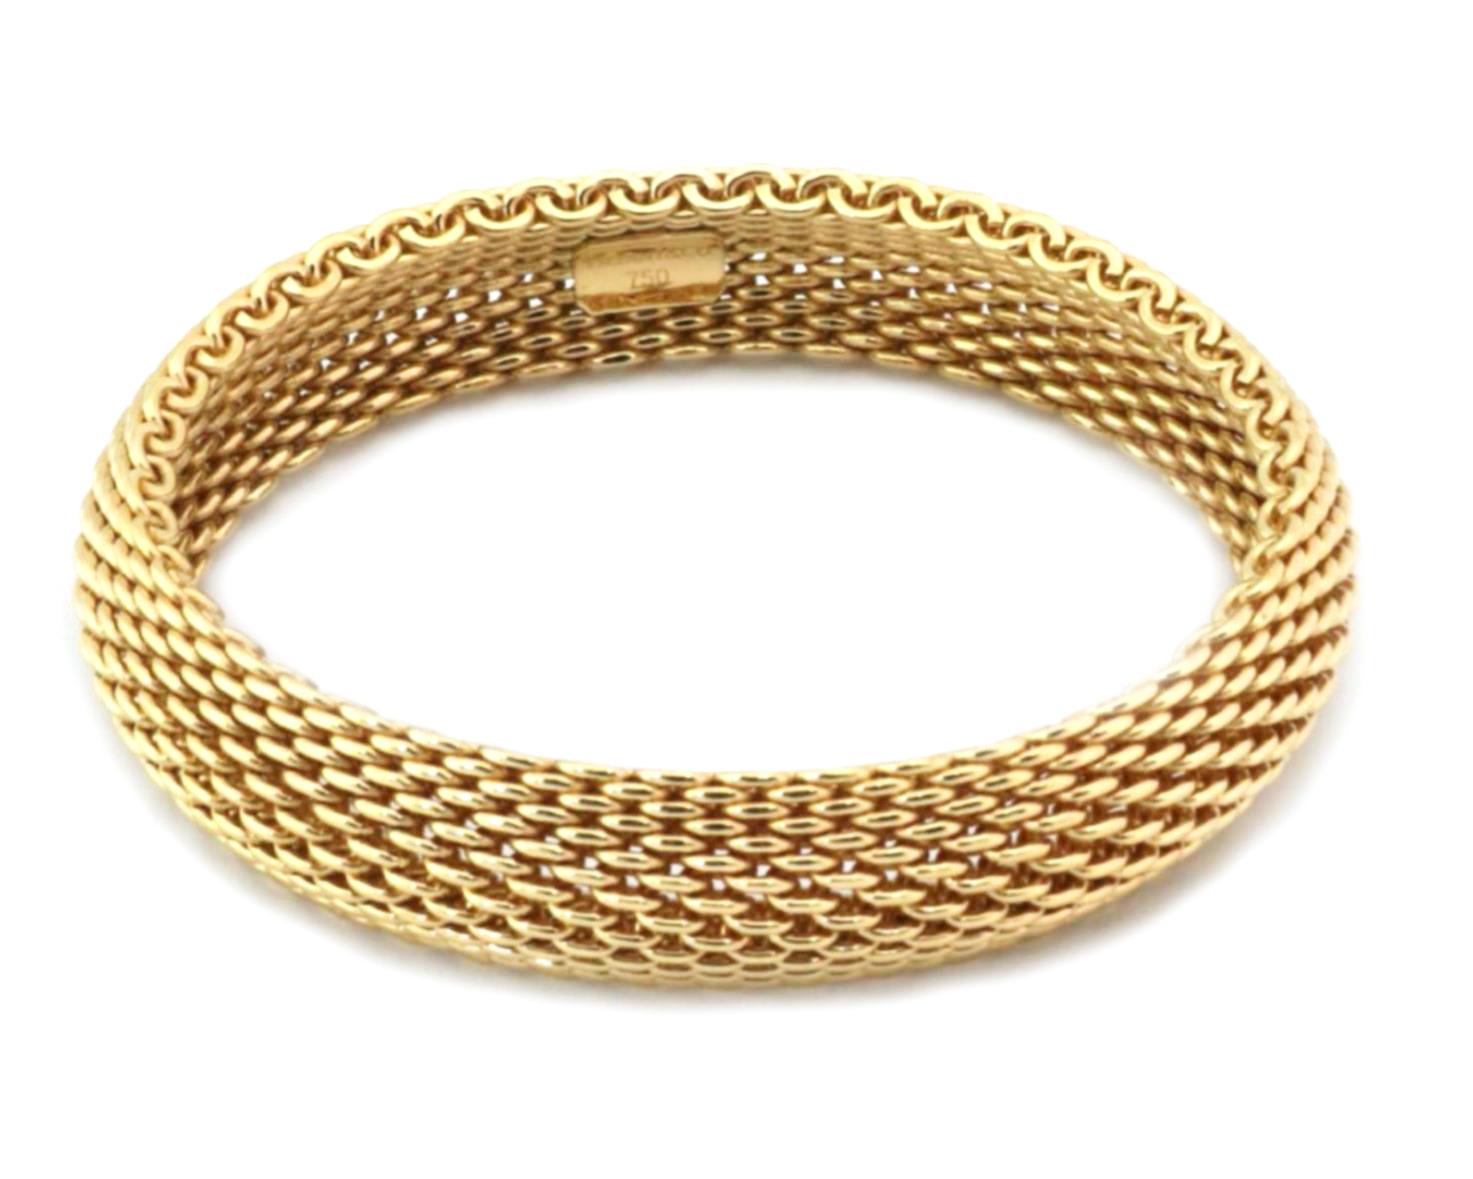 Ce magnifique bracelet authentique de Tiffany & Co. est issu de la collection Somerset. La bande flexible de 15 mm de large est fabriquée en or jaune 18 carats avec une finition polie. Elle porte un poinçon indiquant le nom du créateur et la teneur